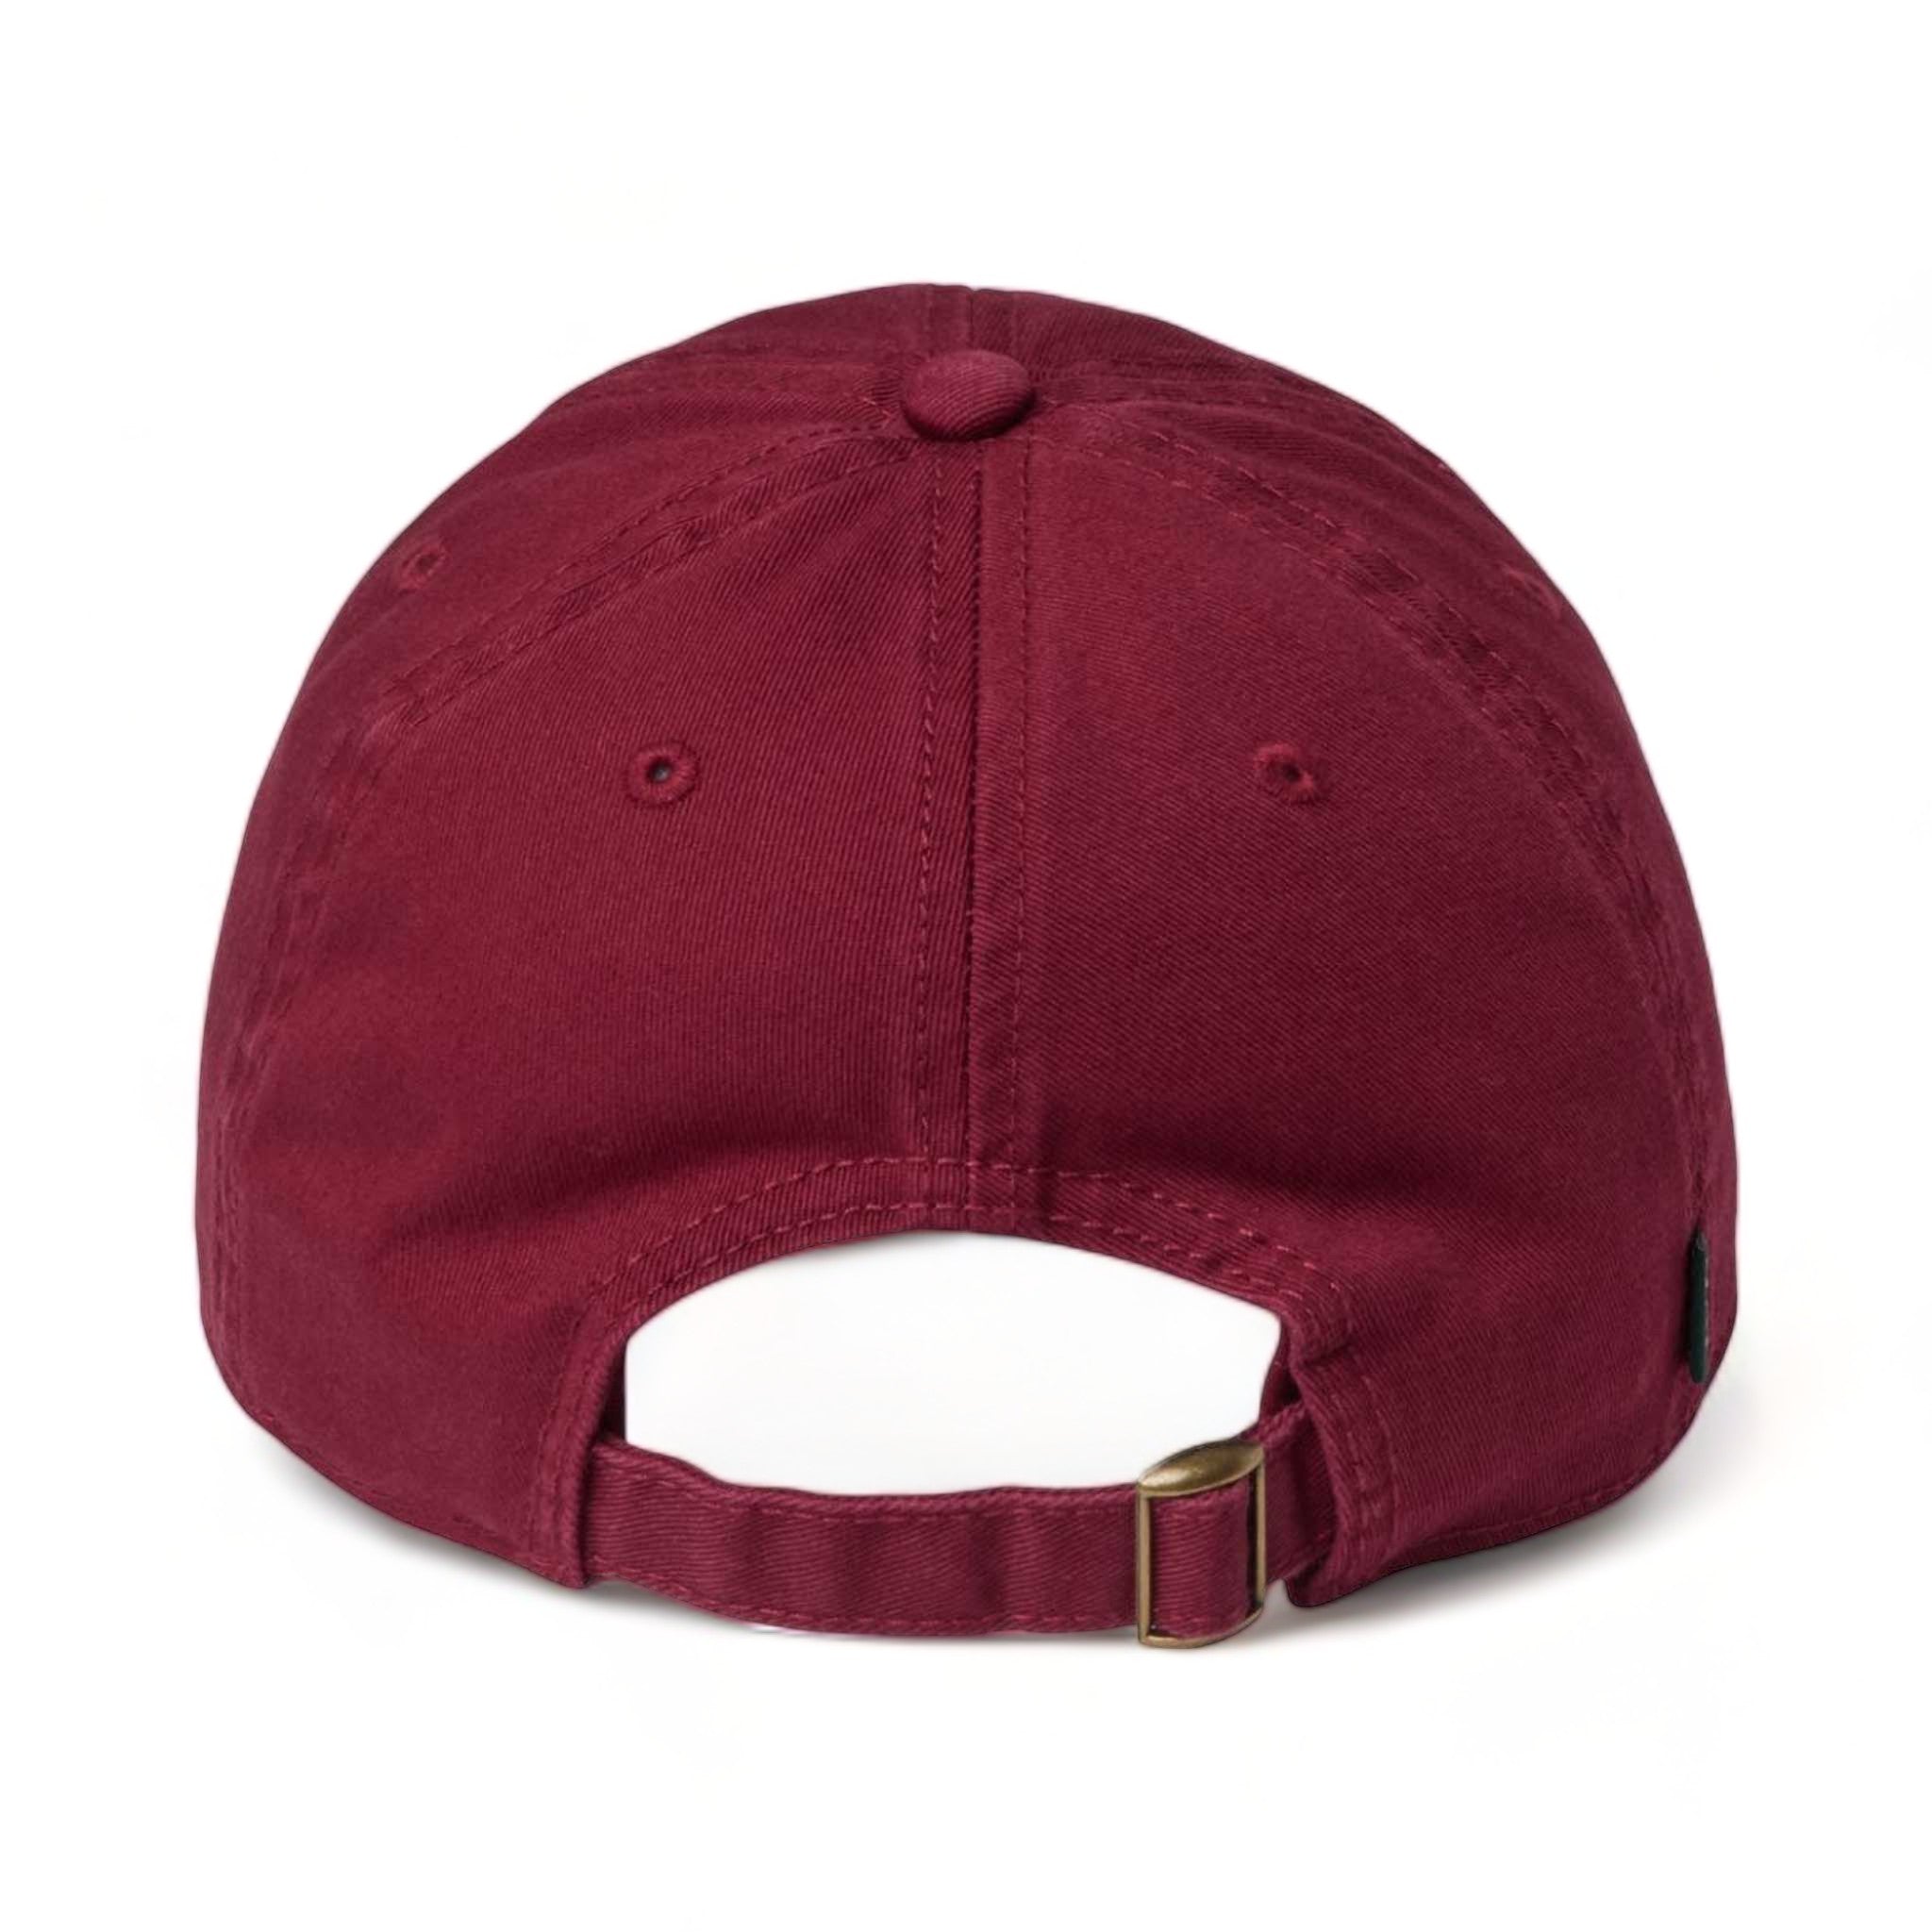 Back view of LEGACY EZA custom hat in burgundy